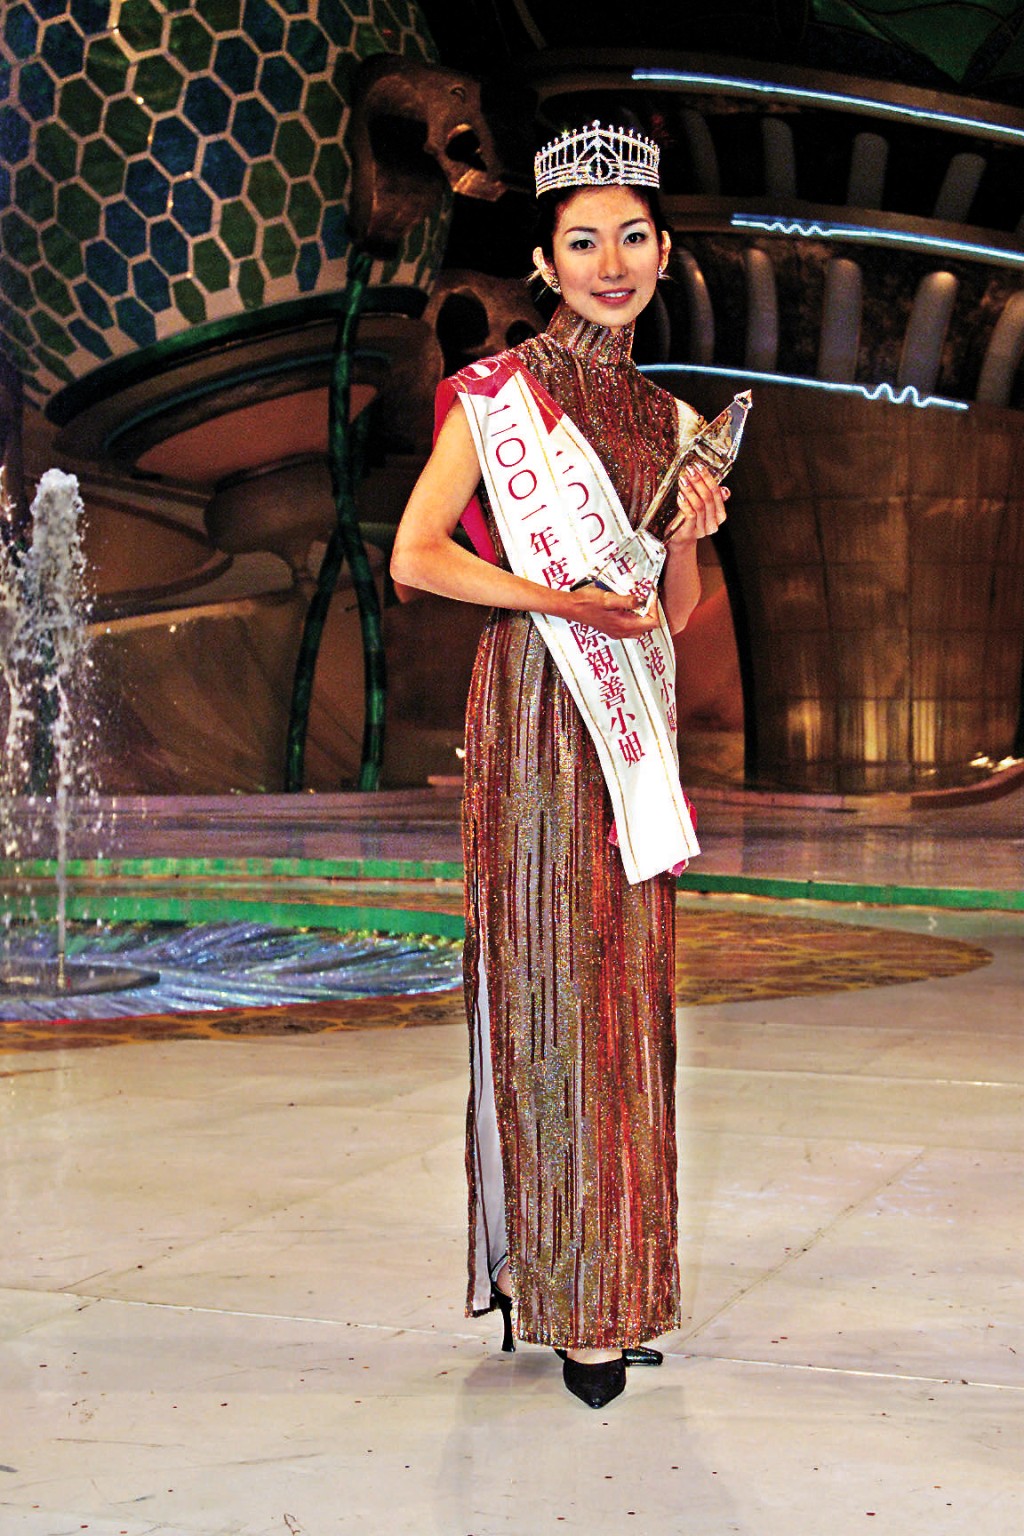 朱凯婷2001年参选港姐获得季军入行。